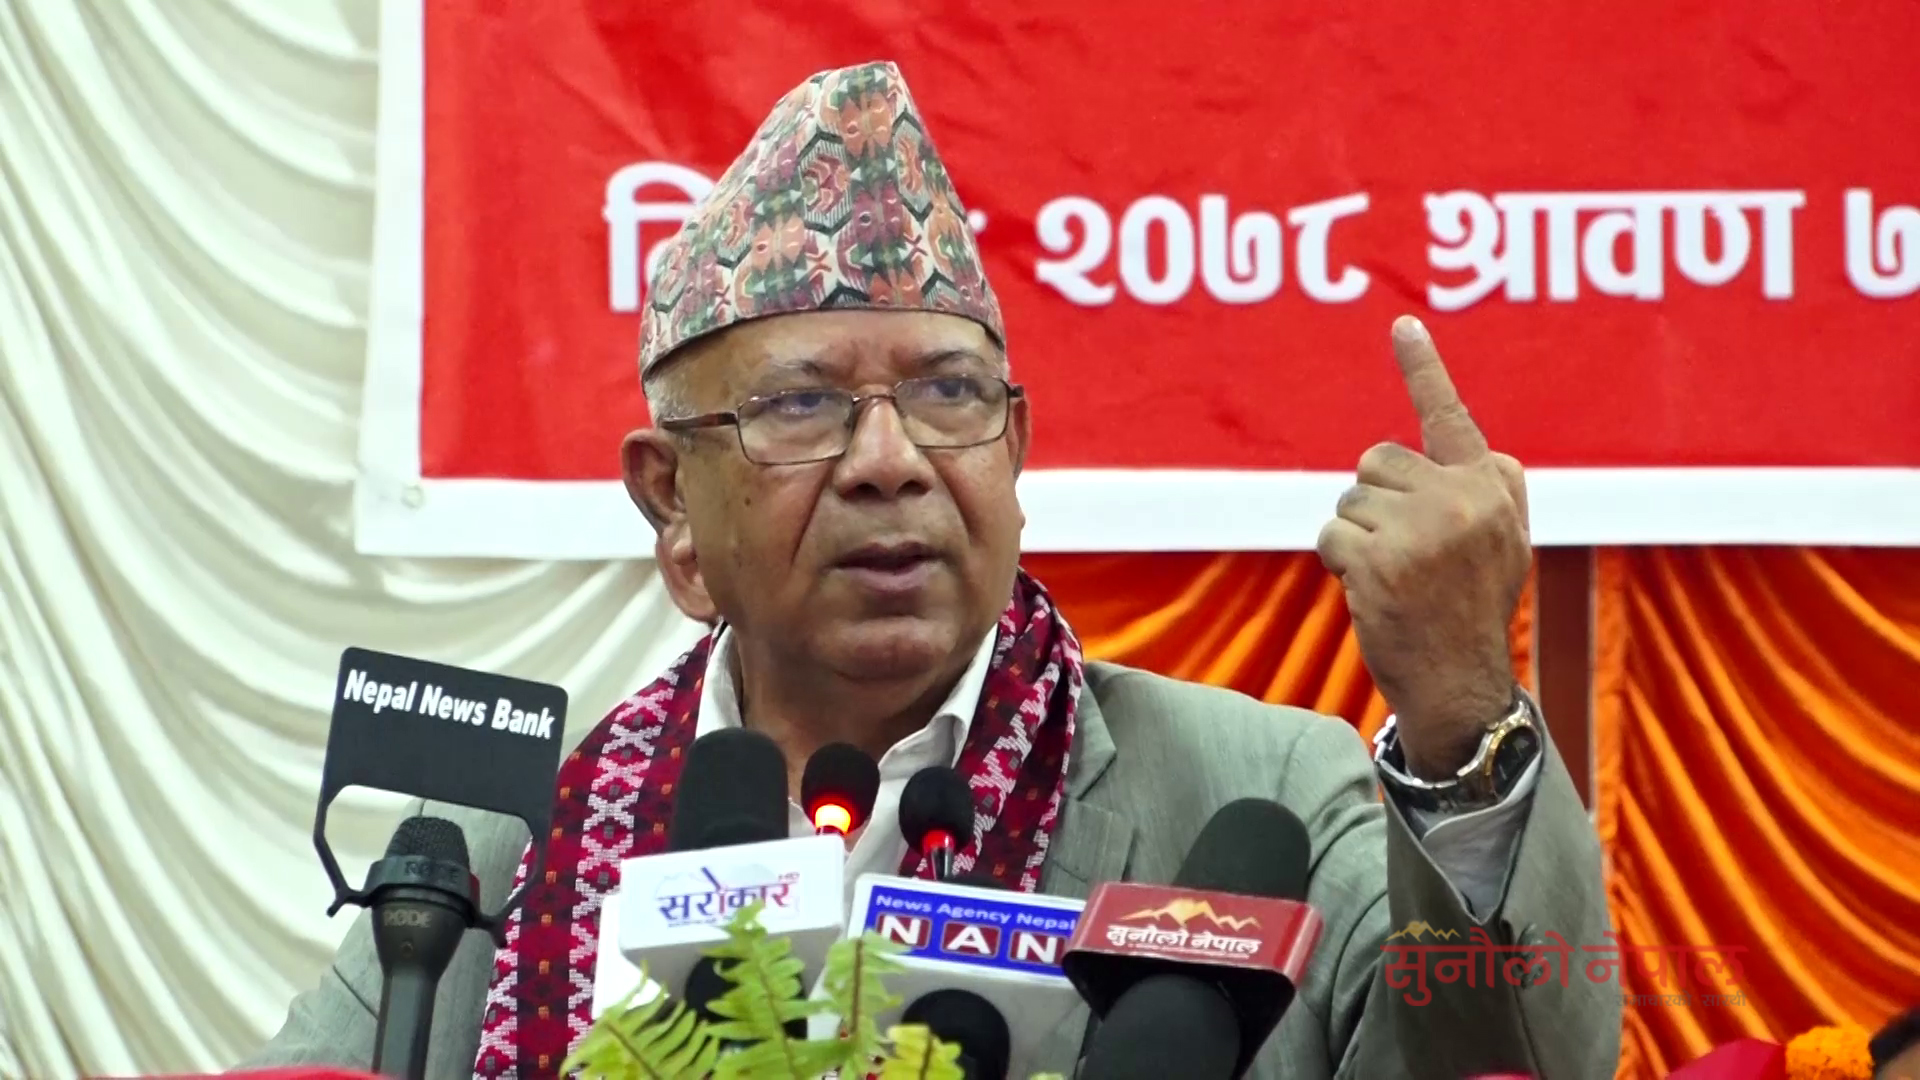 देश दक्षिणपन्थी बाटोमा जाने खतरा बढ्यो, सतर्क रहनुपर्छः माधव नेपाल